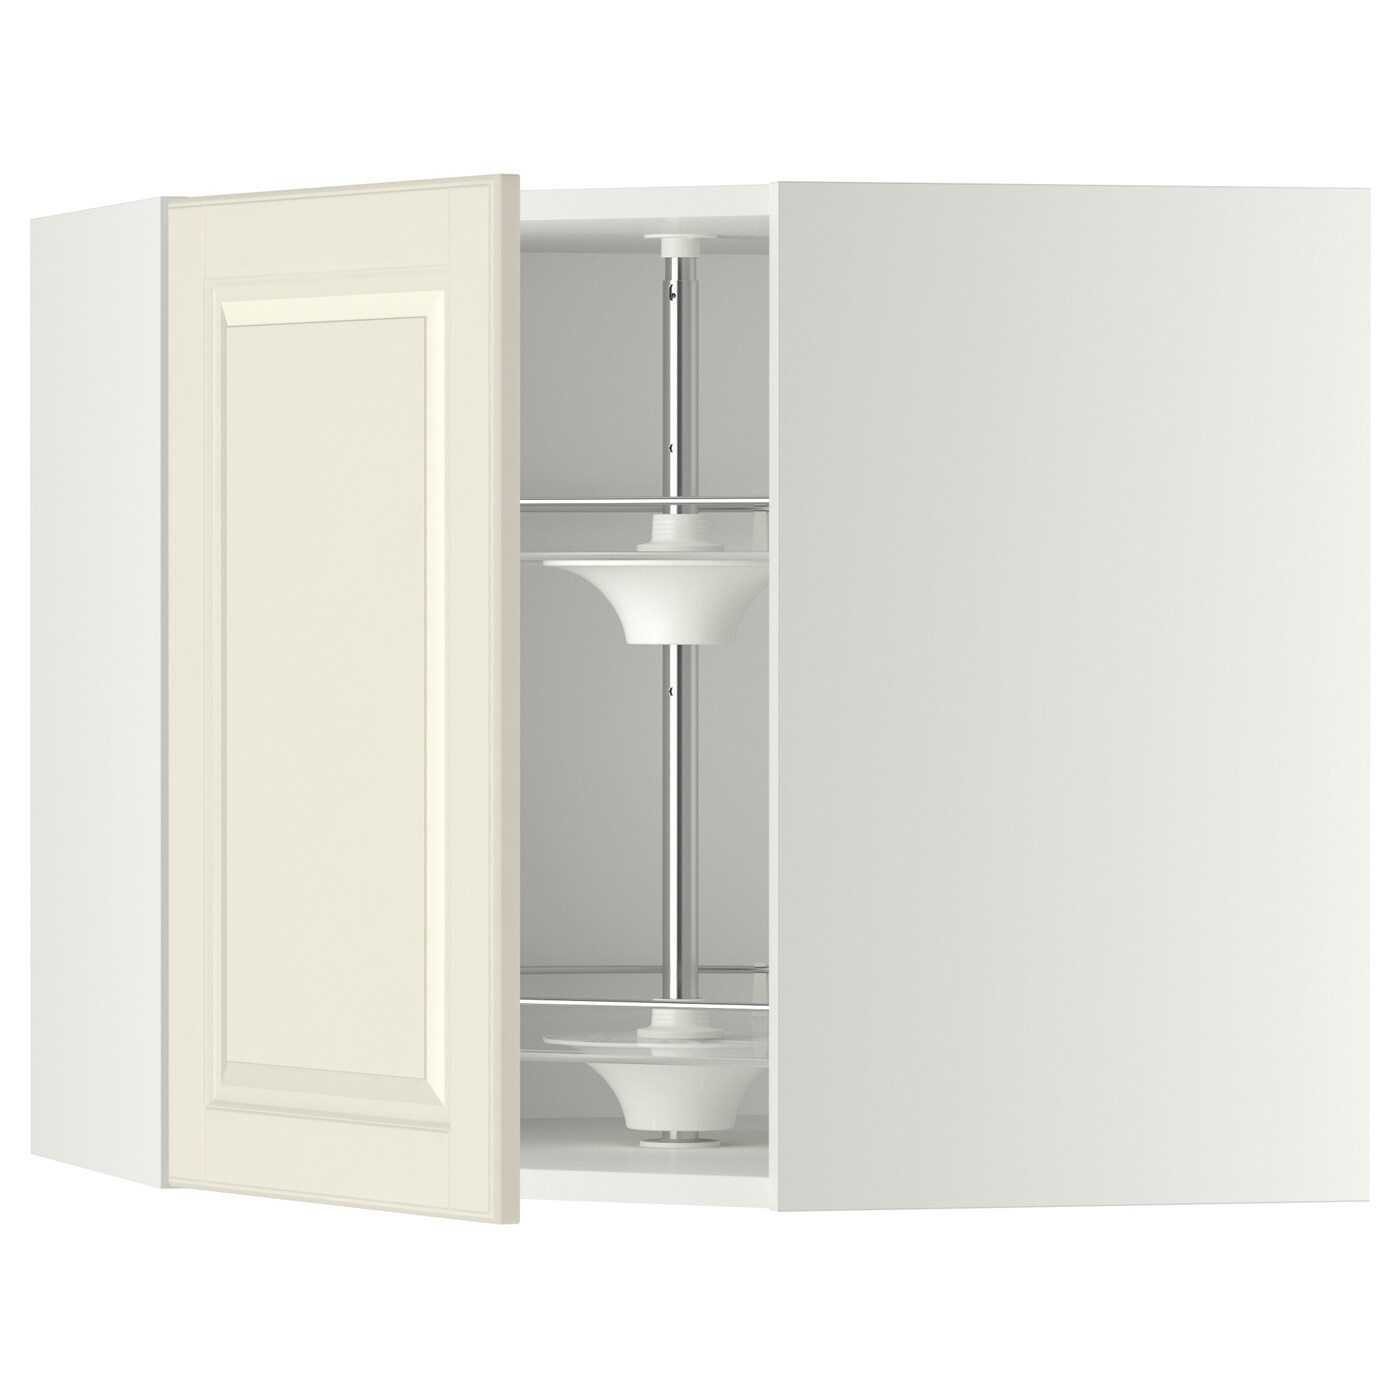 Угловой навесной шкаф с каруселью - METOD  IKEA/  МЕТОД ИКЕА, 60х68 см, белый/кремовый